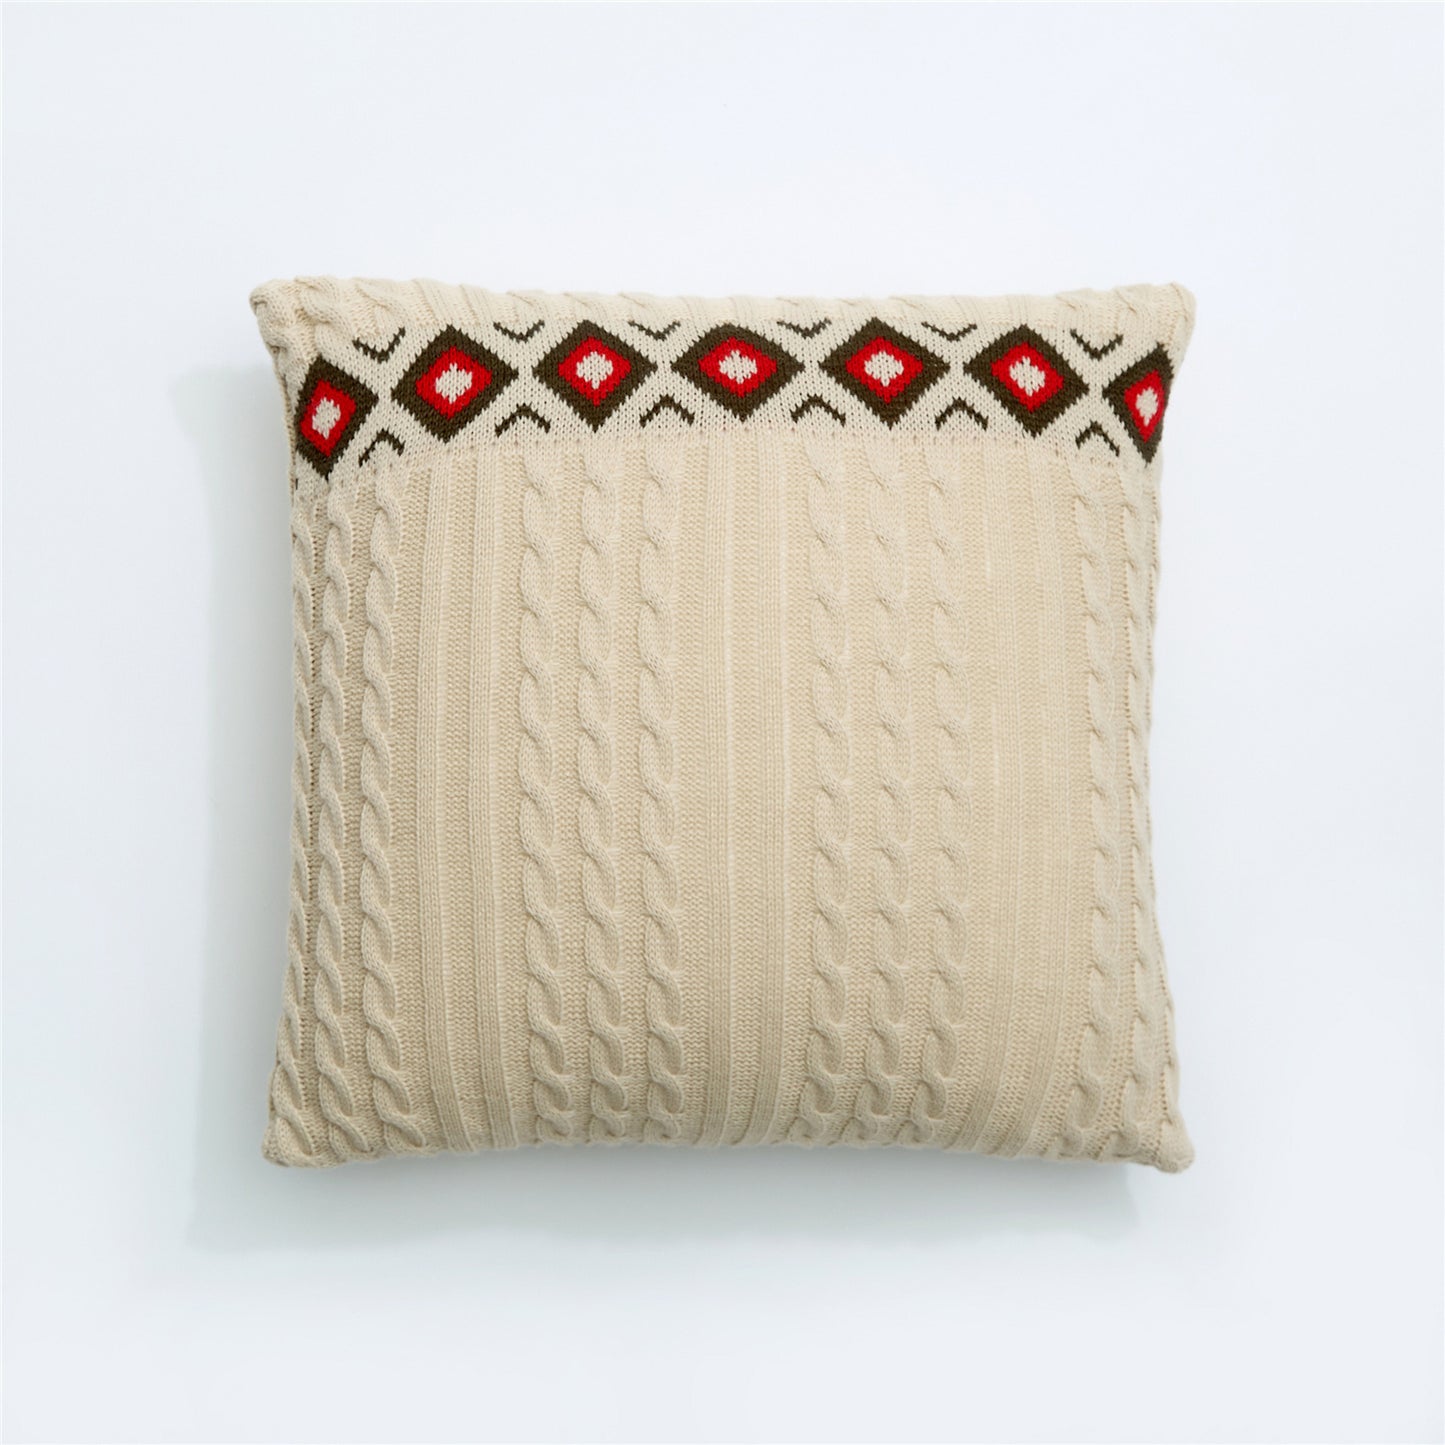 Woven Boho Cushion Cover Home Decorative Pillow Case